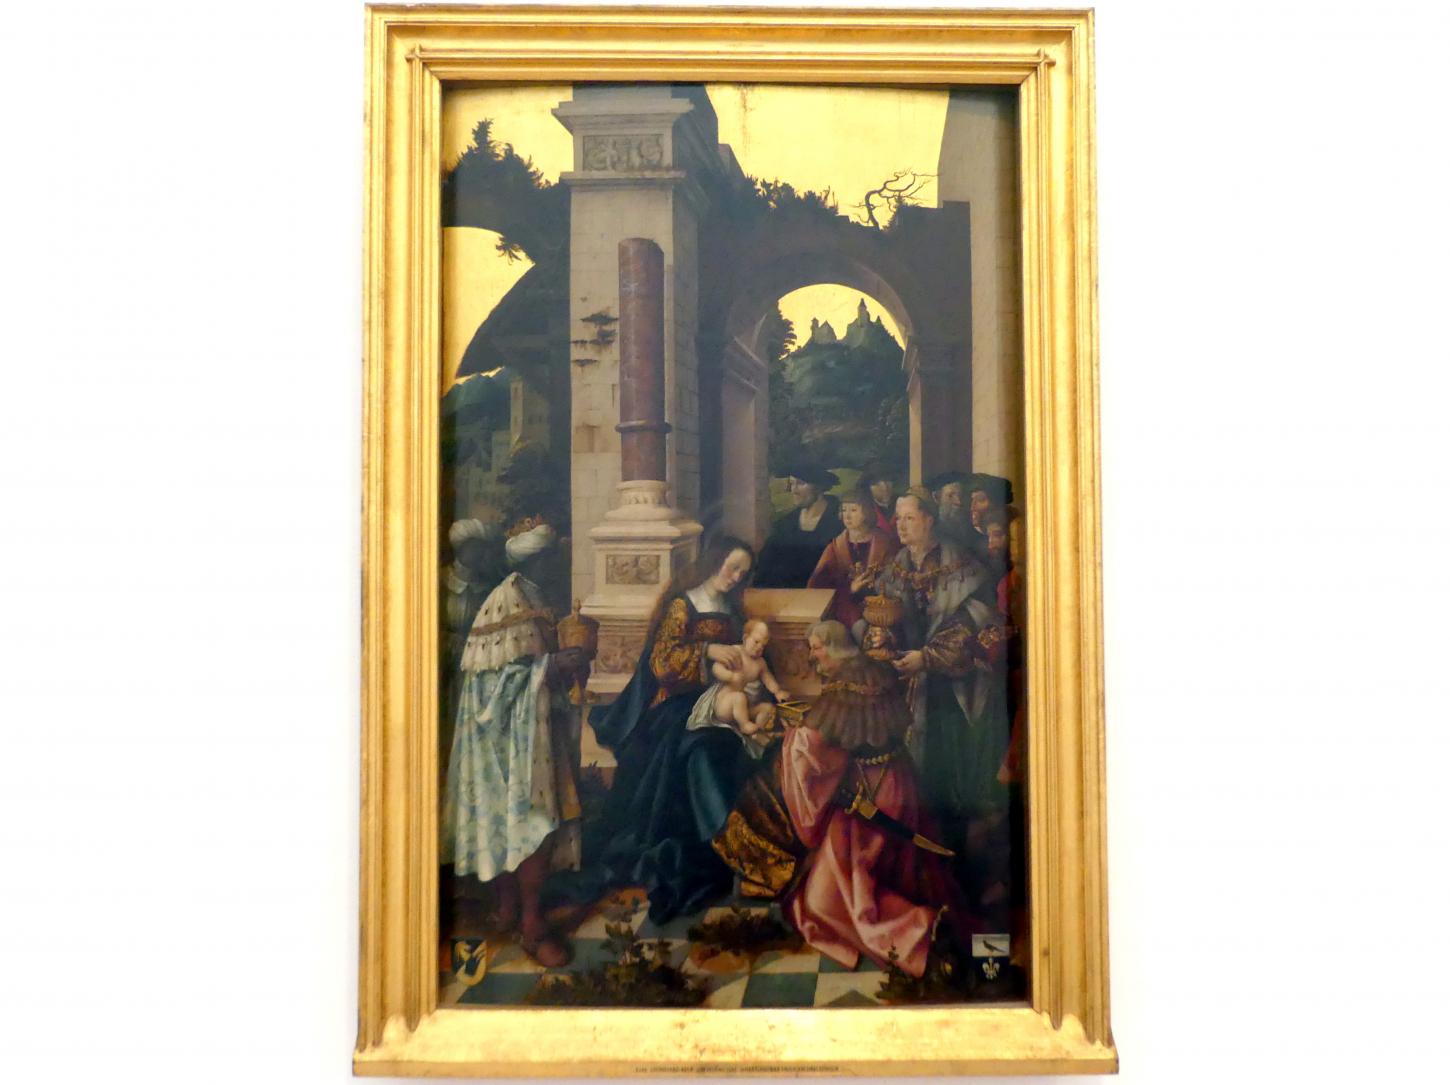 Leonhard Beck (1505–1520), Anbetung der Heiligen Drei Könige, Augsburg, ehem. Dominikanerkloster St. Magdalena, Klosterkirche, jetzt Augsburg, Staatsgalerie in der ehem. Katharinenkirche, Saal 2, um 1520